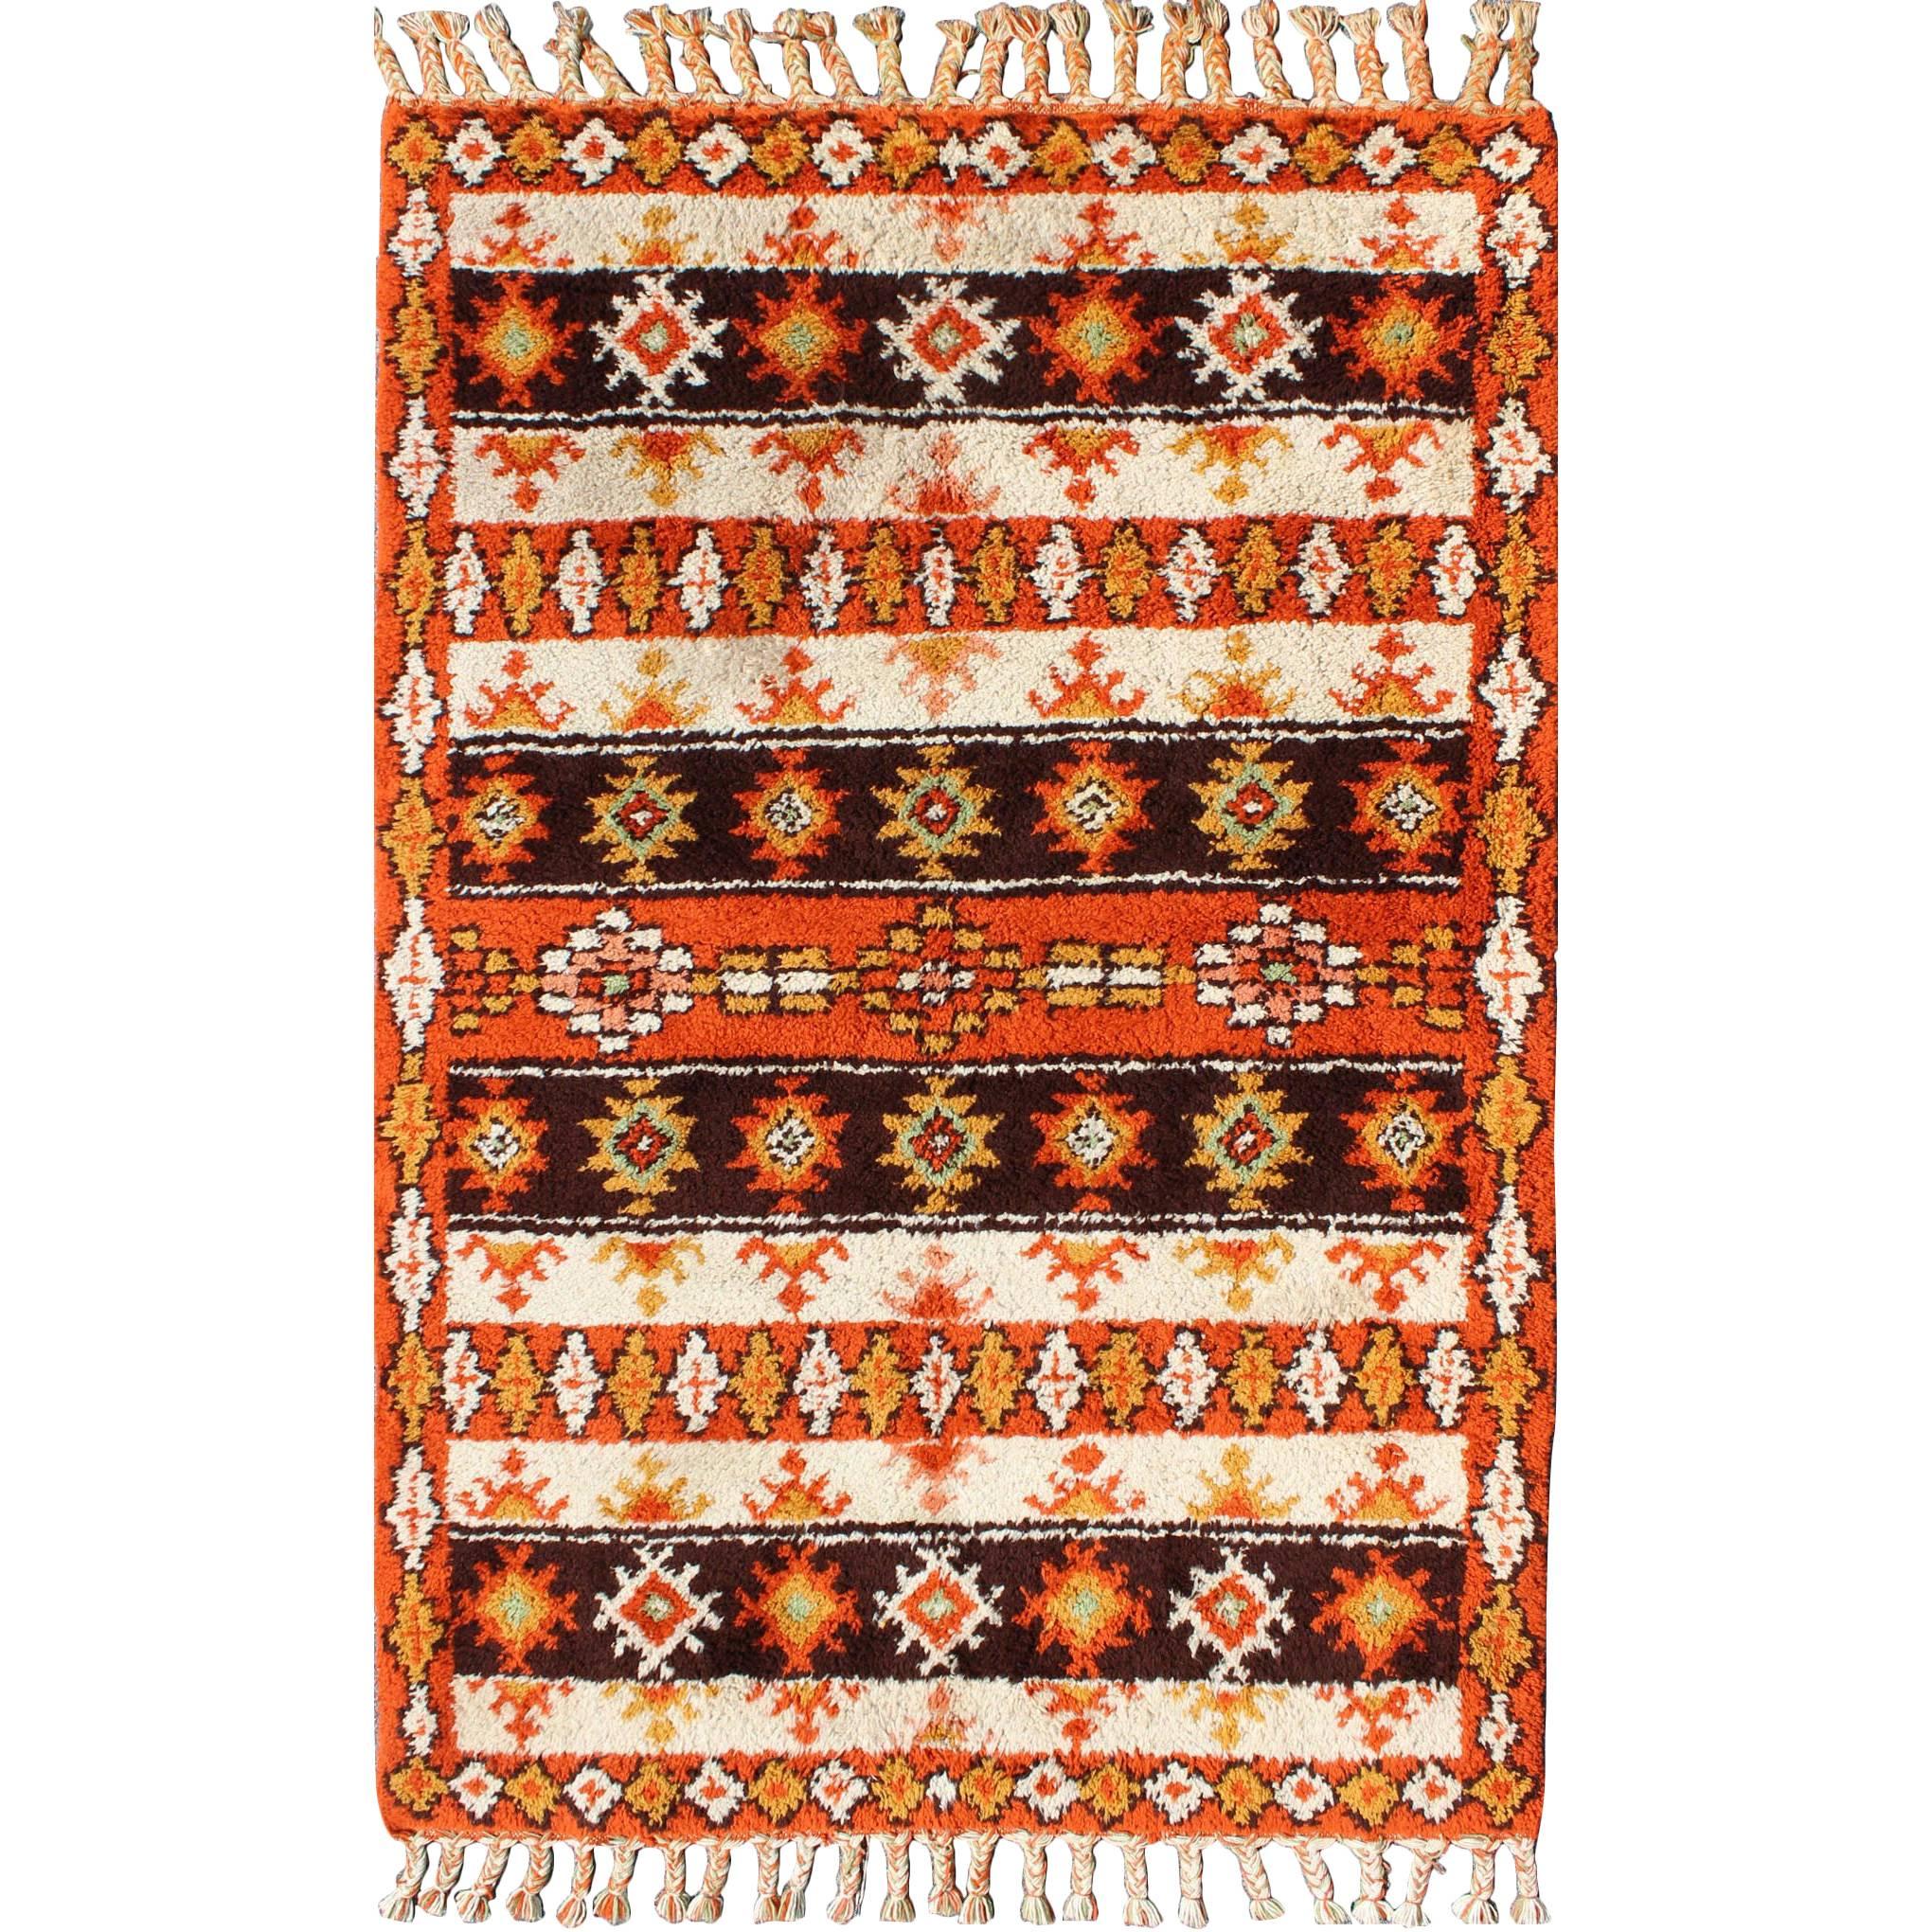 Marokkanischer Teppich mit Streifen und Stammesmuster in Orange, D. Braun, Elfenbein